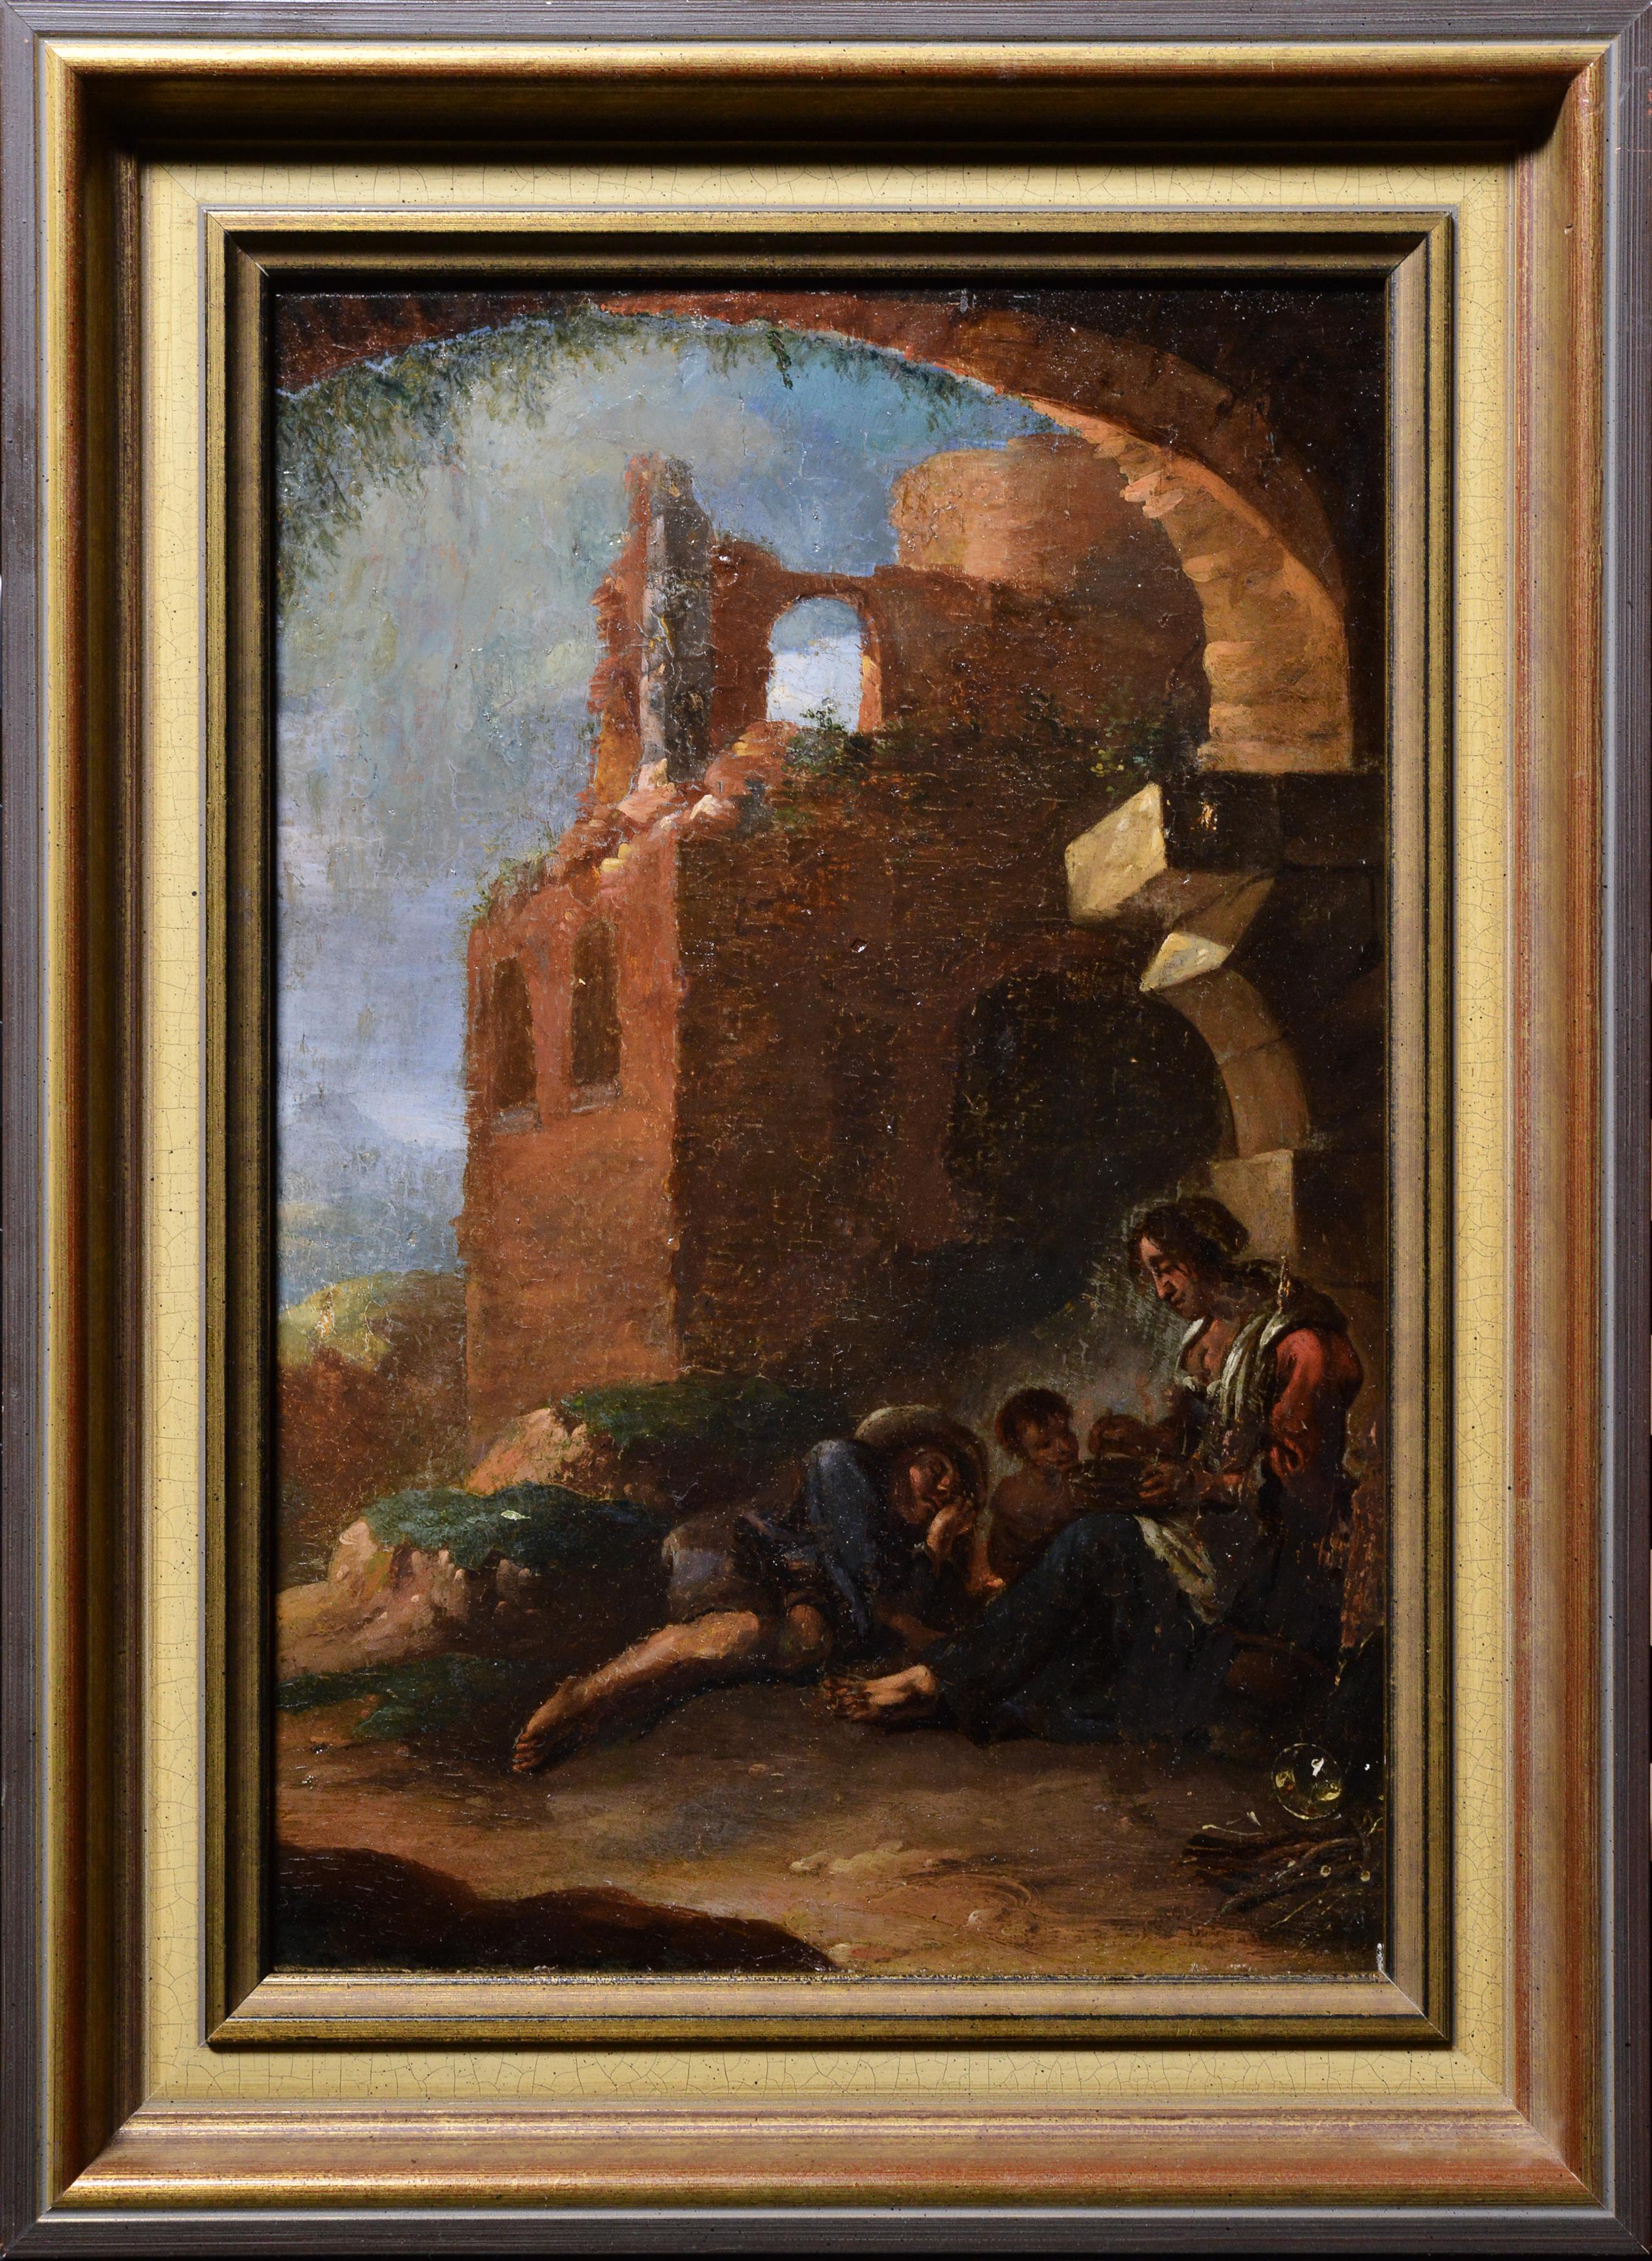 Landscape Painting Unknown - Peinture à l'huile italienne du 18ème siècle, Grotto in Ruins, scène de rue avec famille en train de se reposer